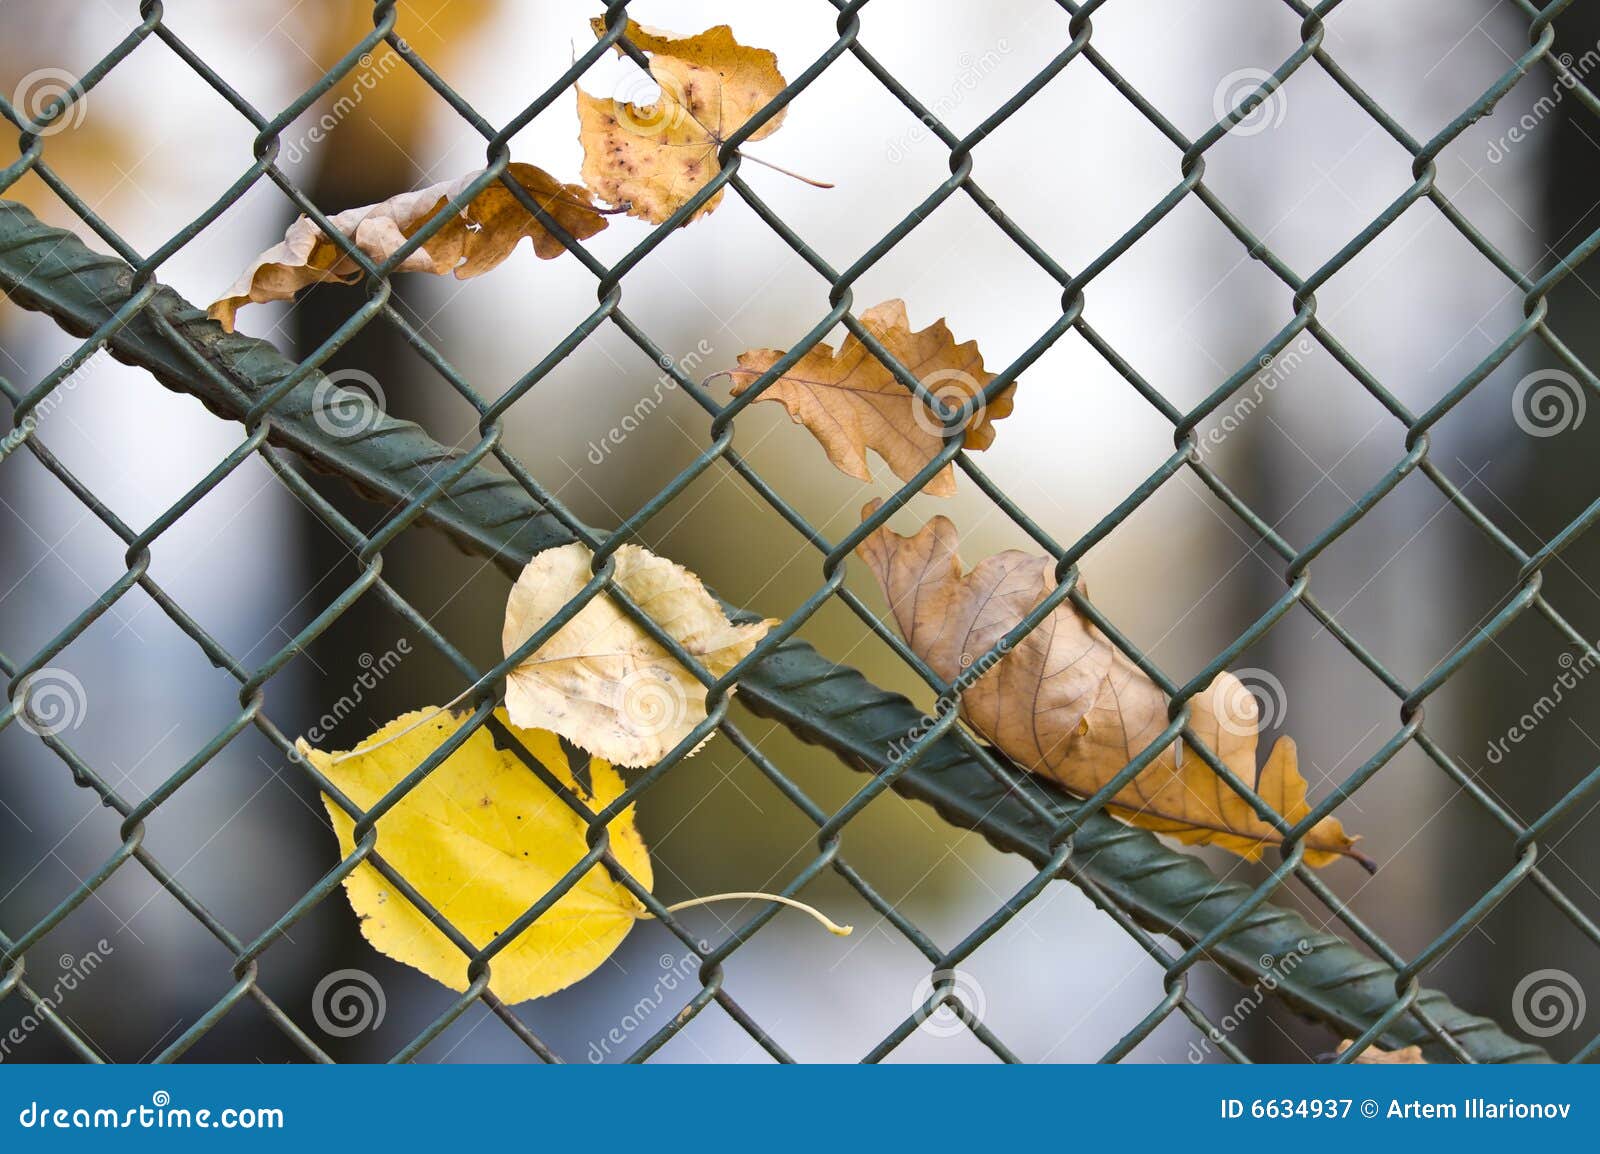 Metal net fence stock image. Image of gauze, fence, metal - 6634937
